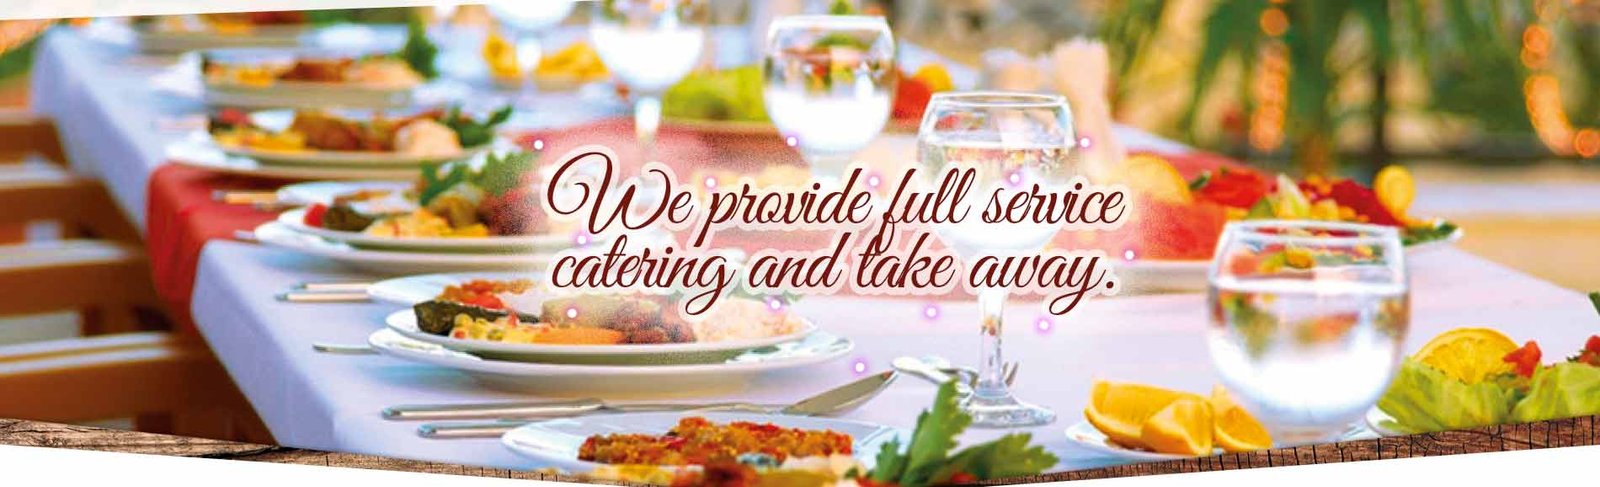 Catering menus for weddings in Saline County - Wilber, NE